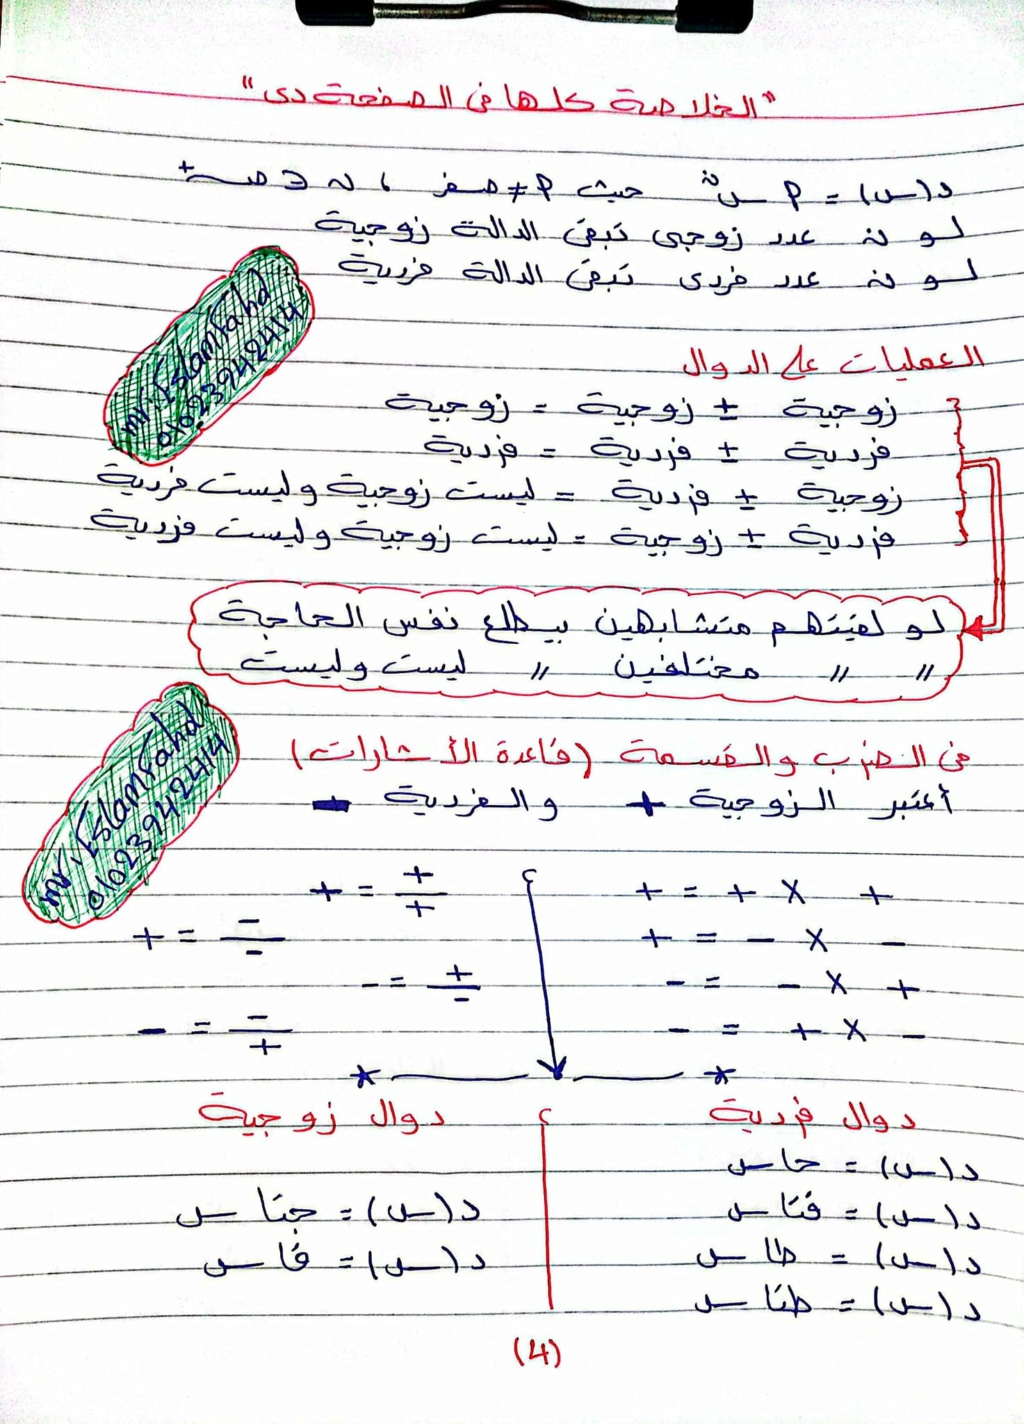 بنك اسئلة الرياضيات البحتة للصف الثاني الثانوي الترم الاول بالاجابات. pdf مستر ابو بكر عامر 4372